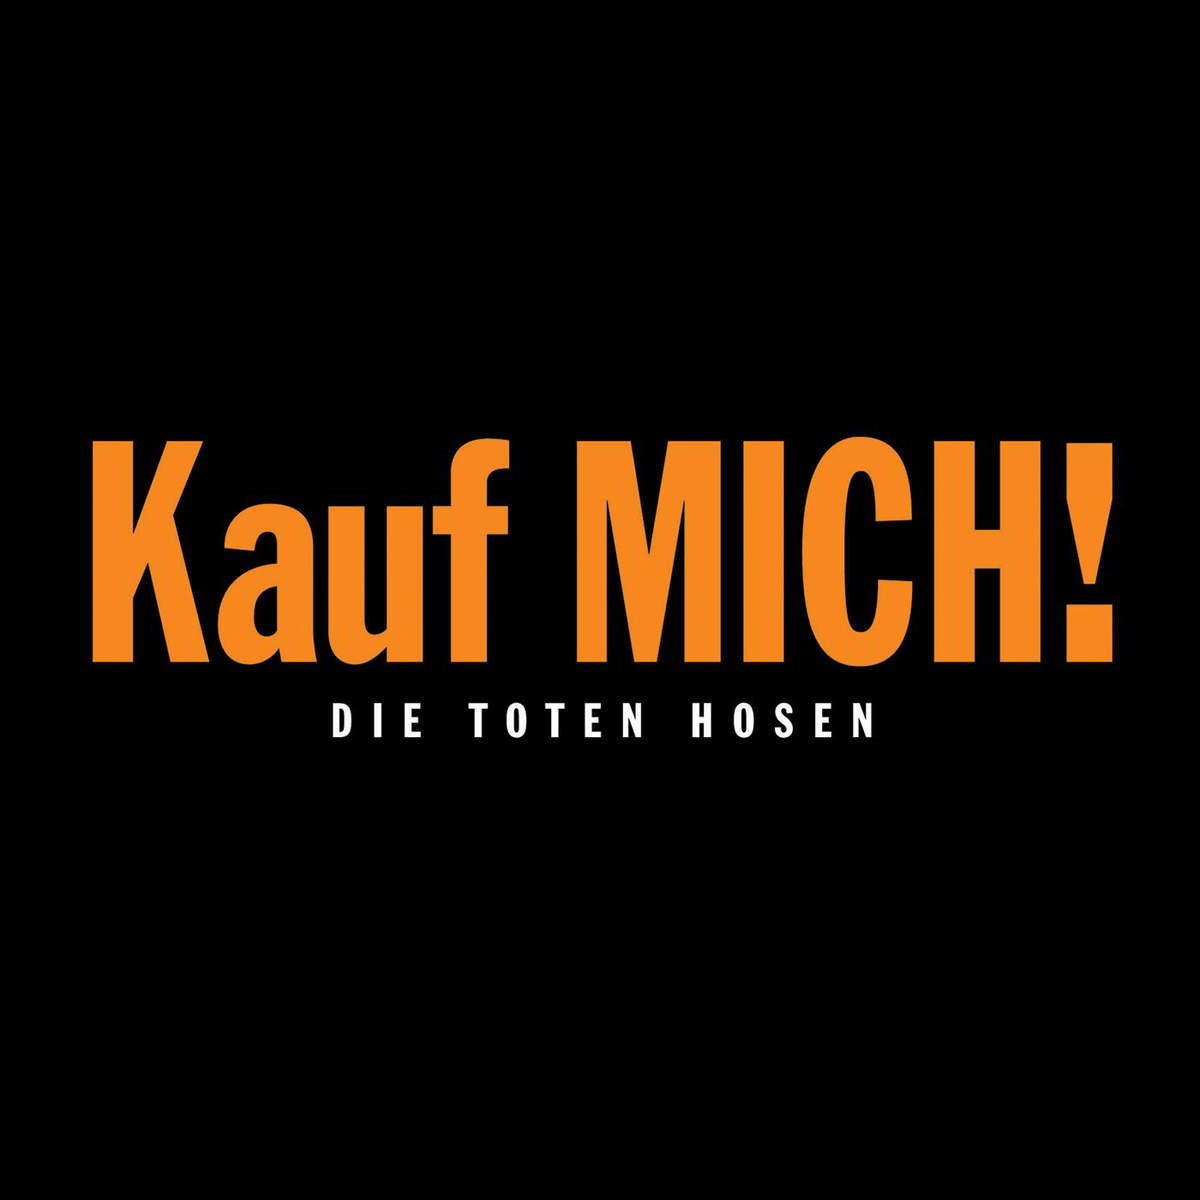 Die Toten Hosen — Kauf mich! cover artwork